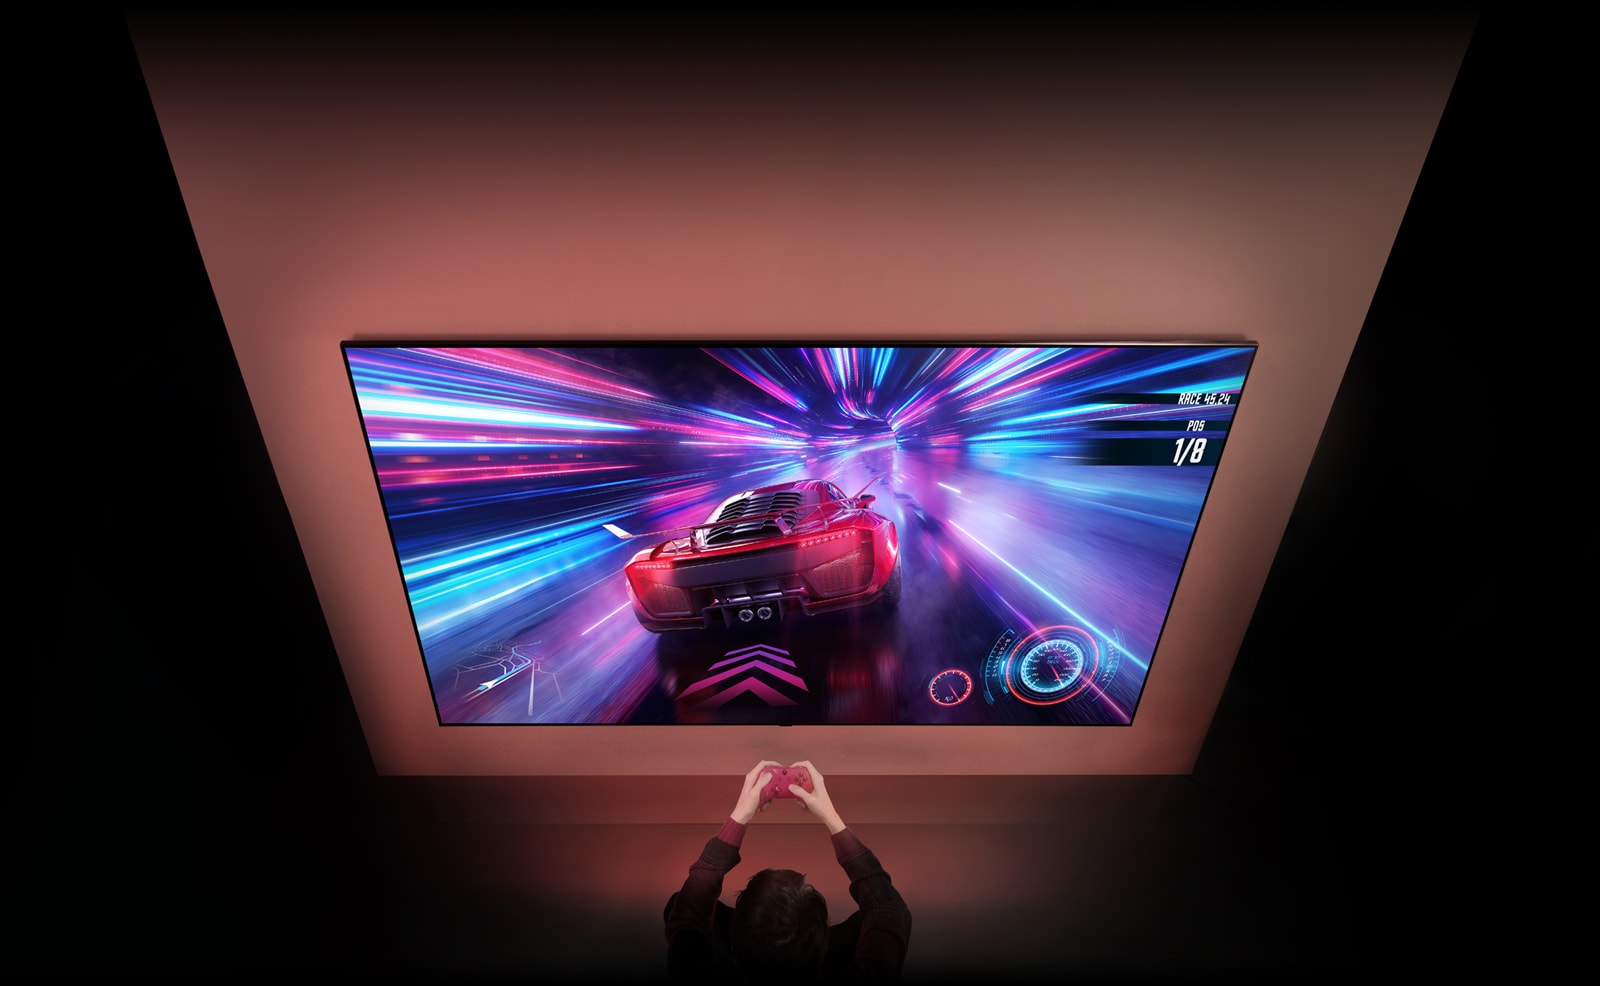 На стене закреплен большой телевизор, на экране которого видна гоночная игра. Перед телевизором вы можете видеть руки и контроллеры человека, сосредоточенного на игре.